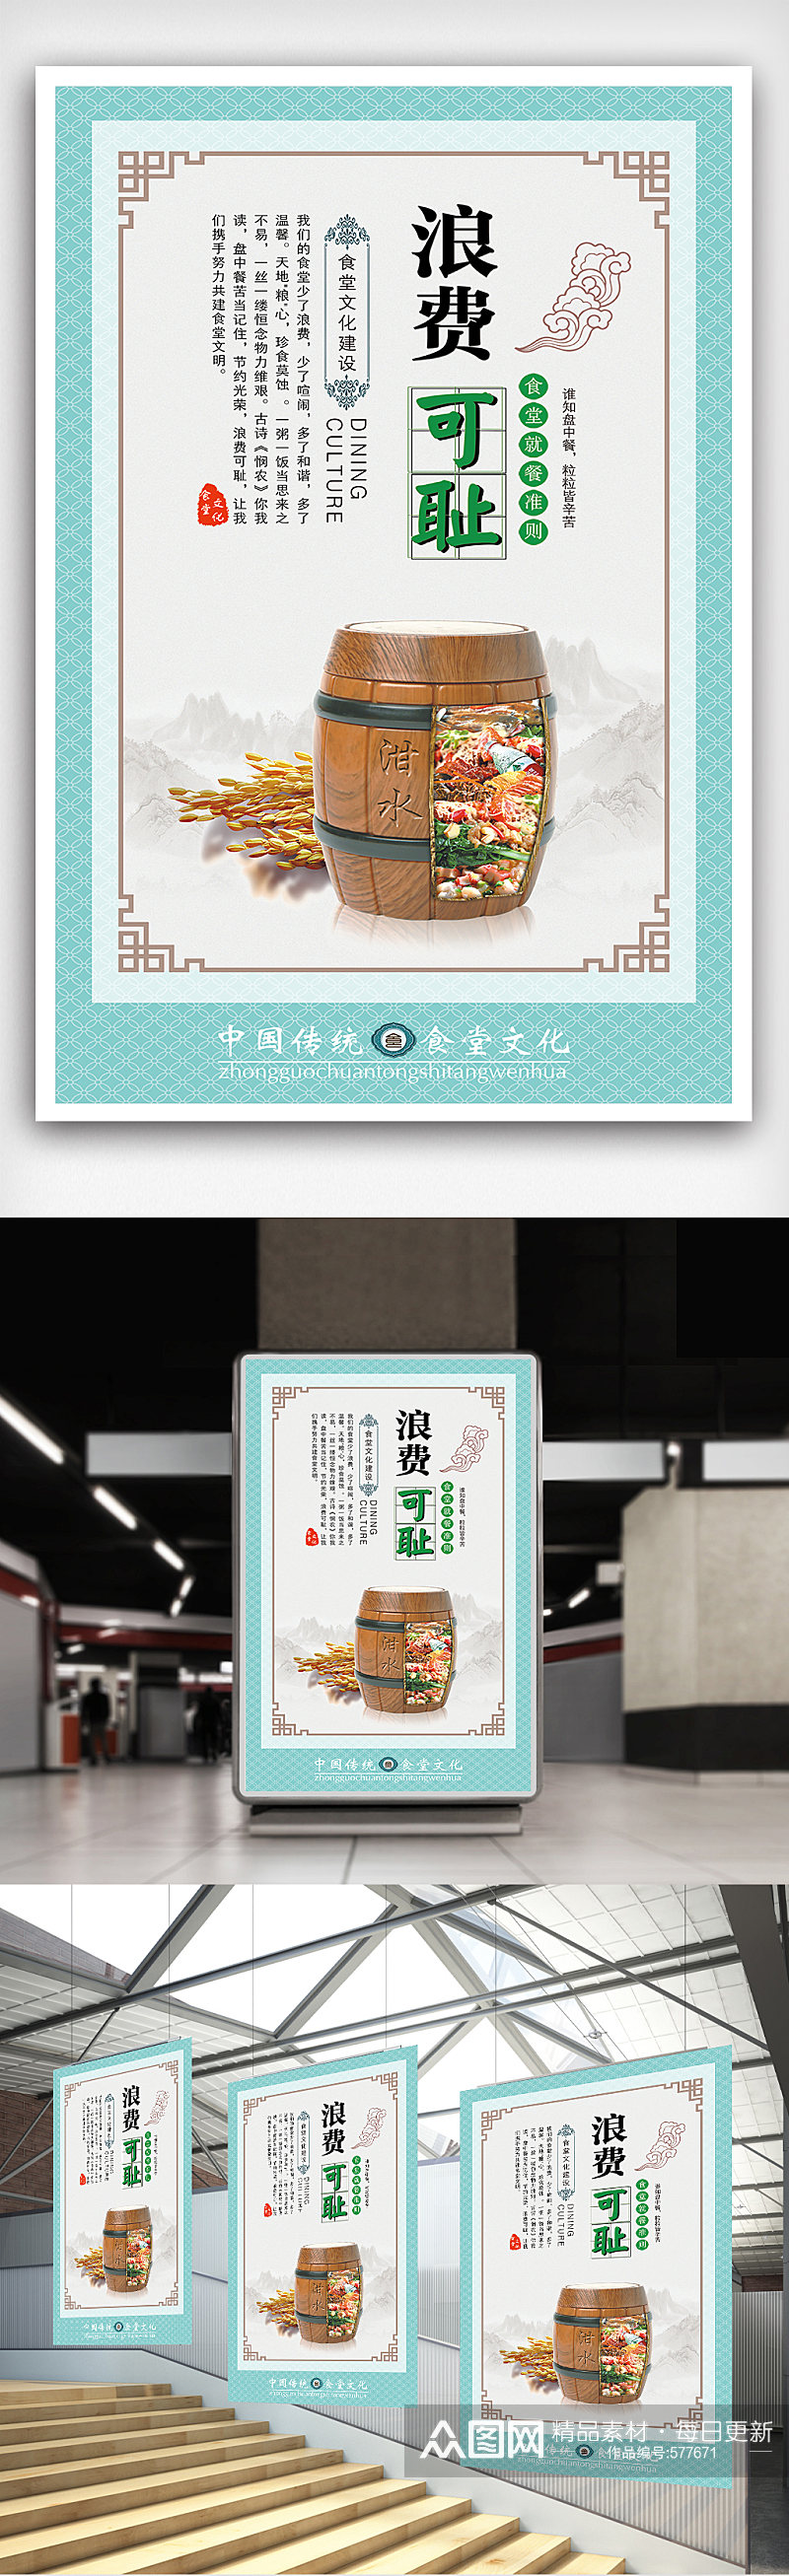 中国风光盘行动校园食堂文化展板挂画素材